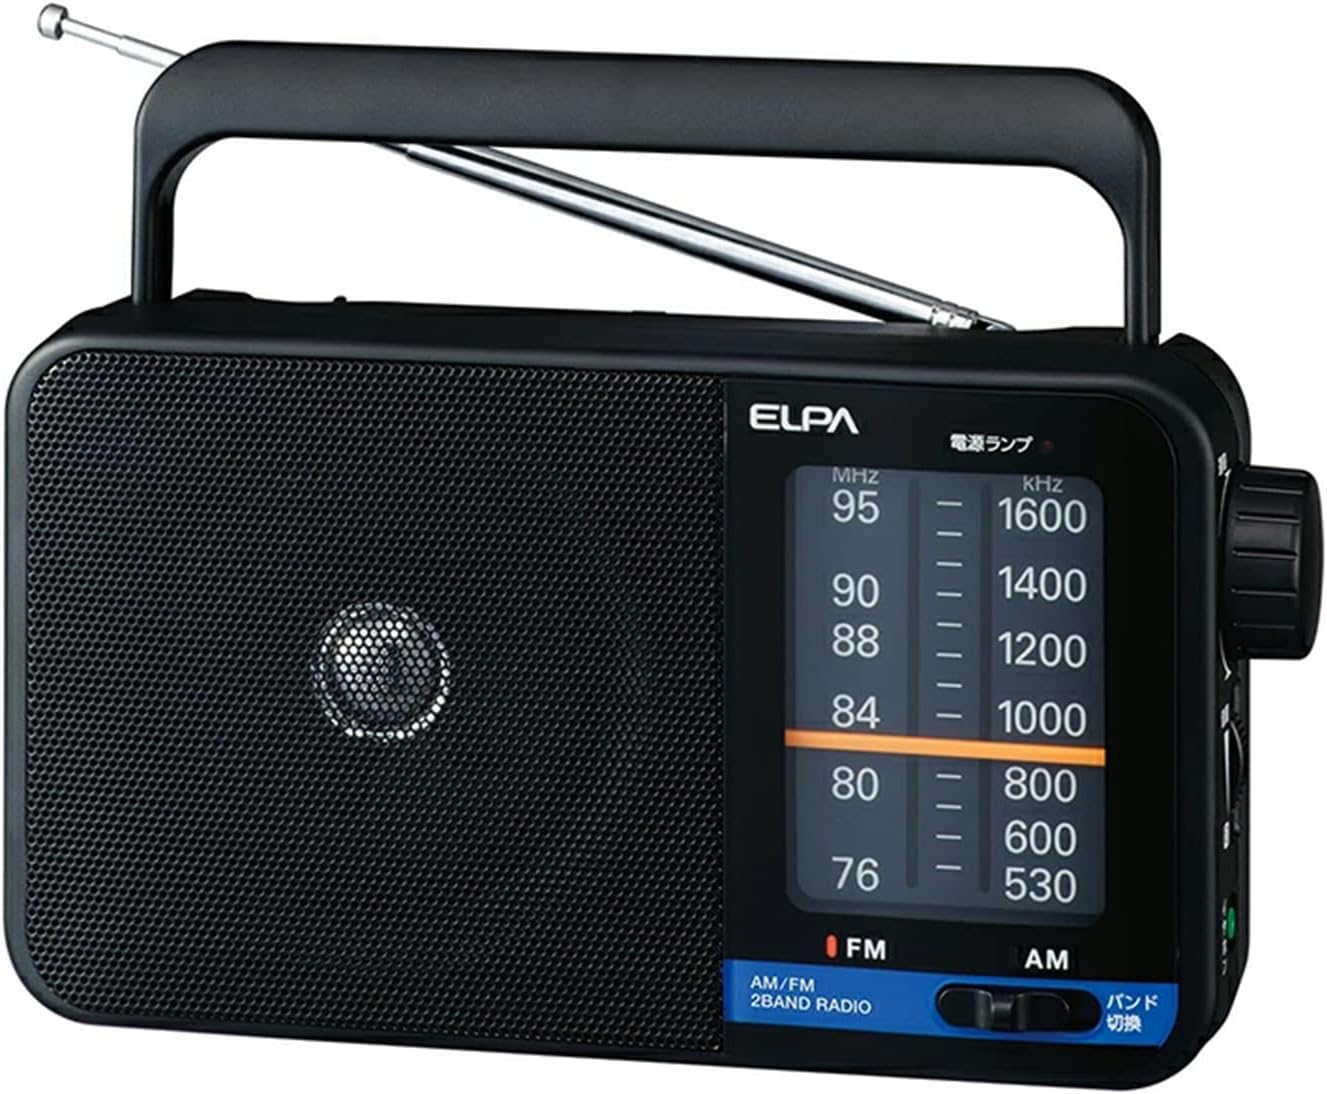 ELPA エルパ ラジオ AM / FM ポータブル ER-H100 ワイドFM対応 デジ夕ル同調 乾電池対応